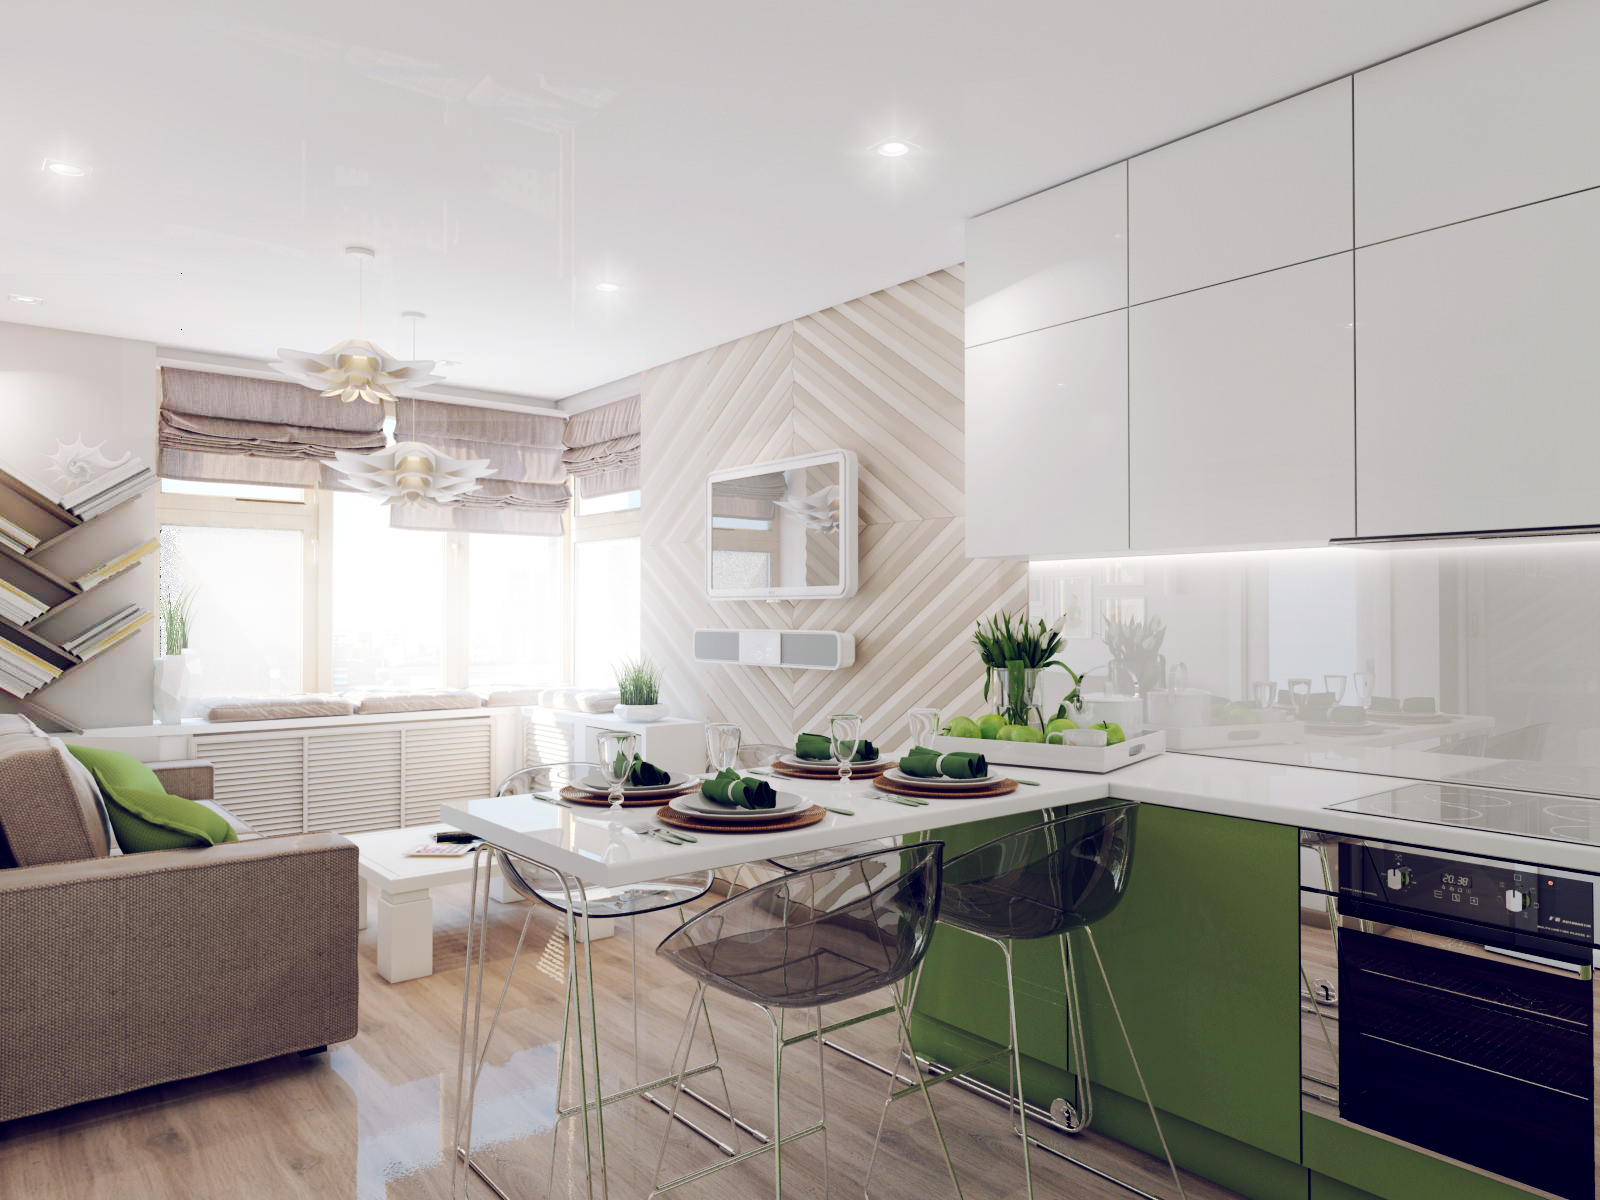 Кухня 13 кв. м: 200 новых идей декорации и украшений на фото 2019 года